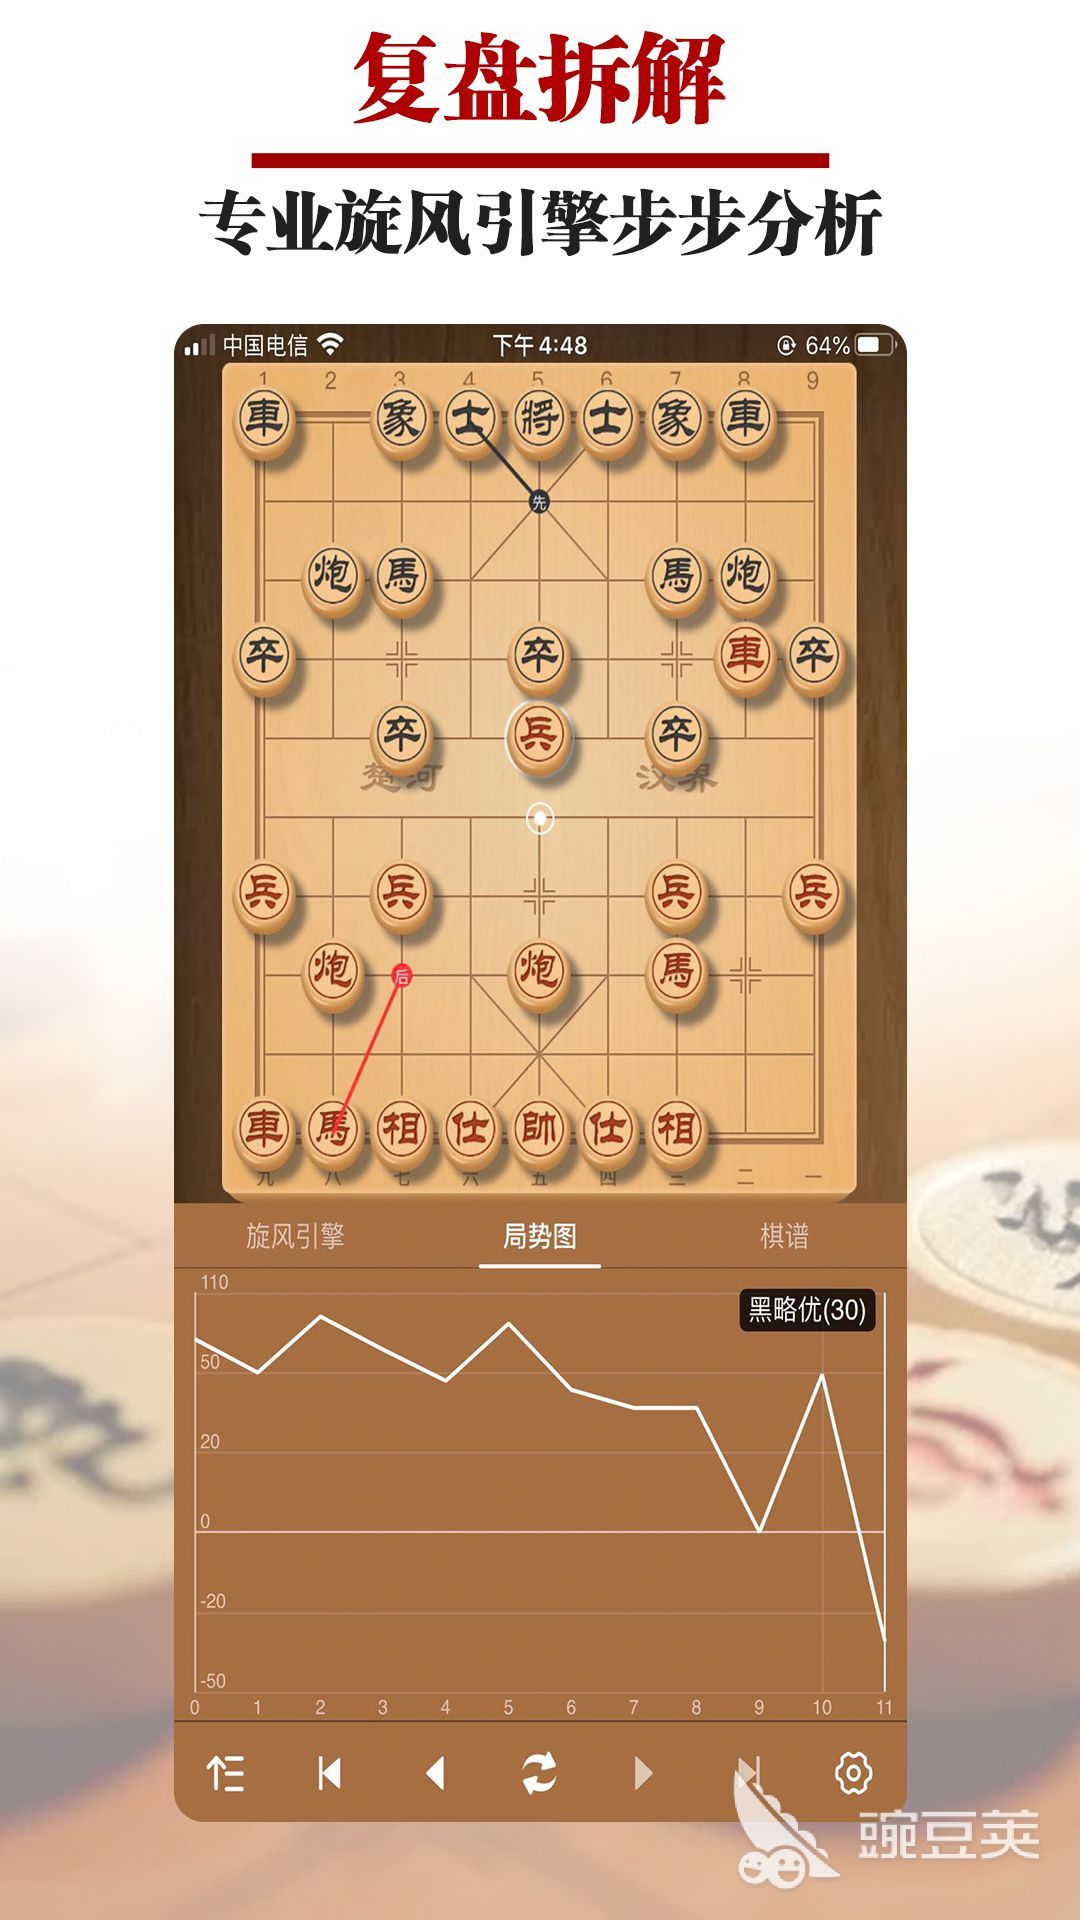 象棋app下载分享 象棋软件哪个更好用插图